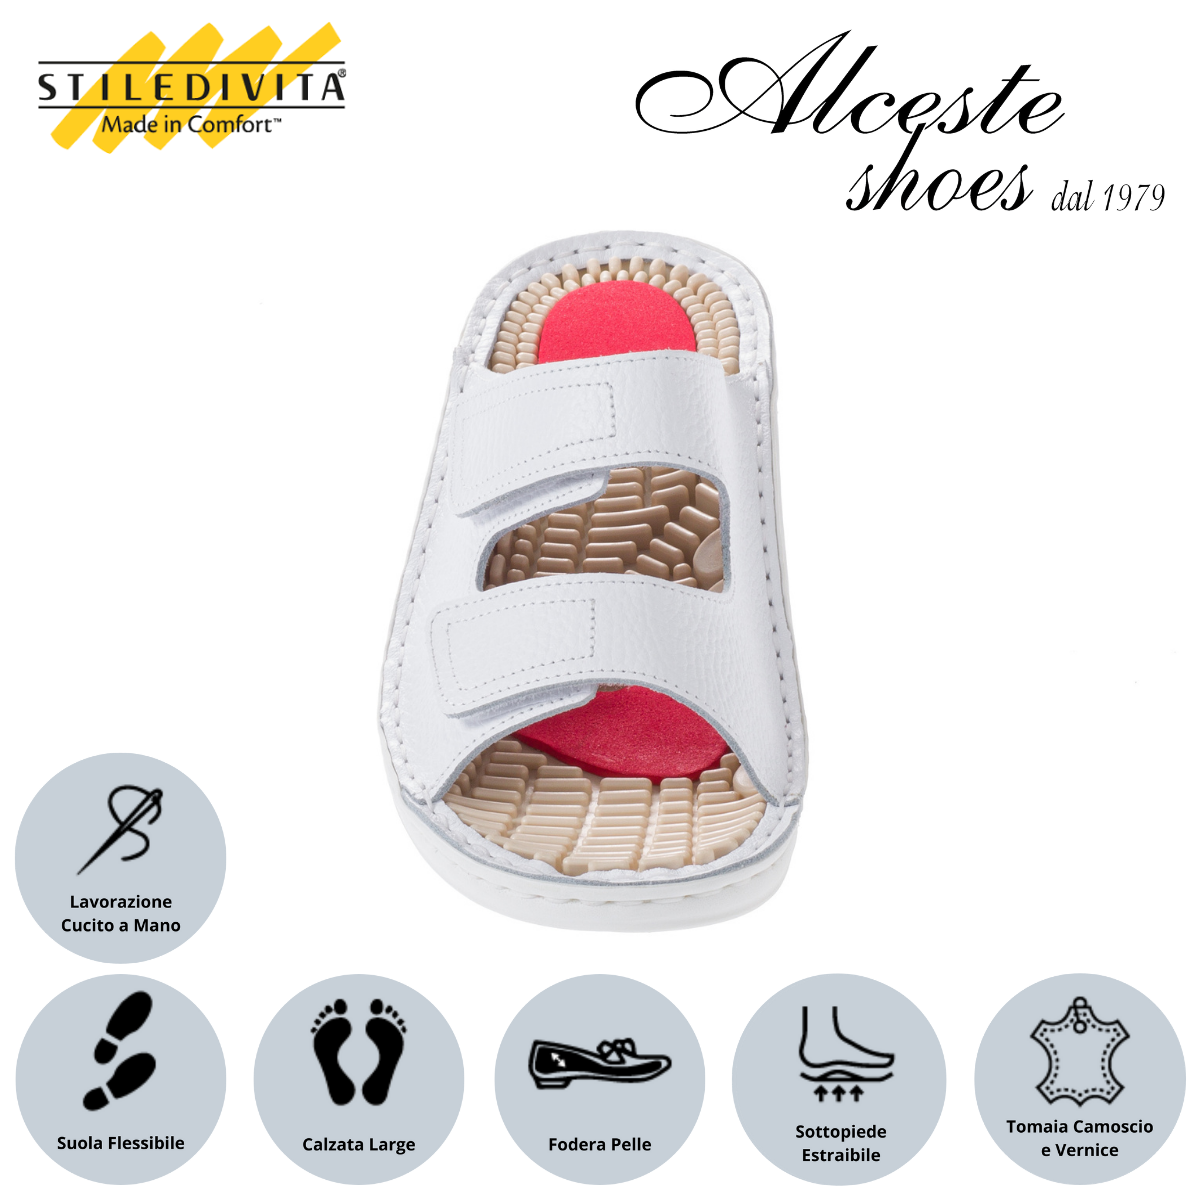 Ciabatta con 2 Strappi e Sottopiede Estraibile "Stiledivita" Art. 5187 Pelle Bianco Alceste Shoes 26